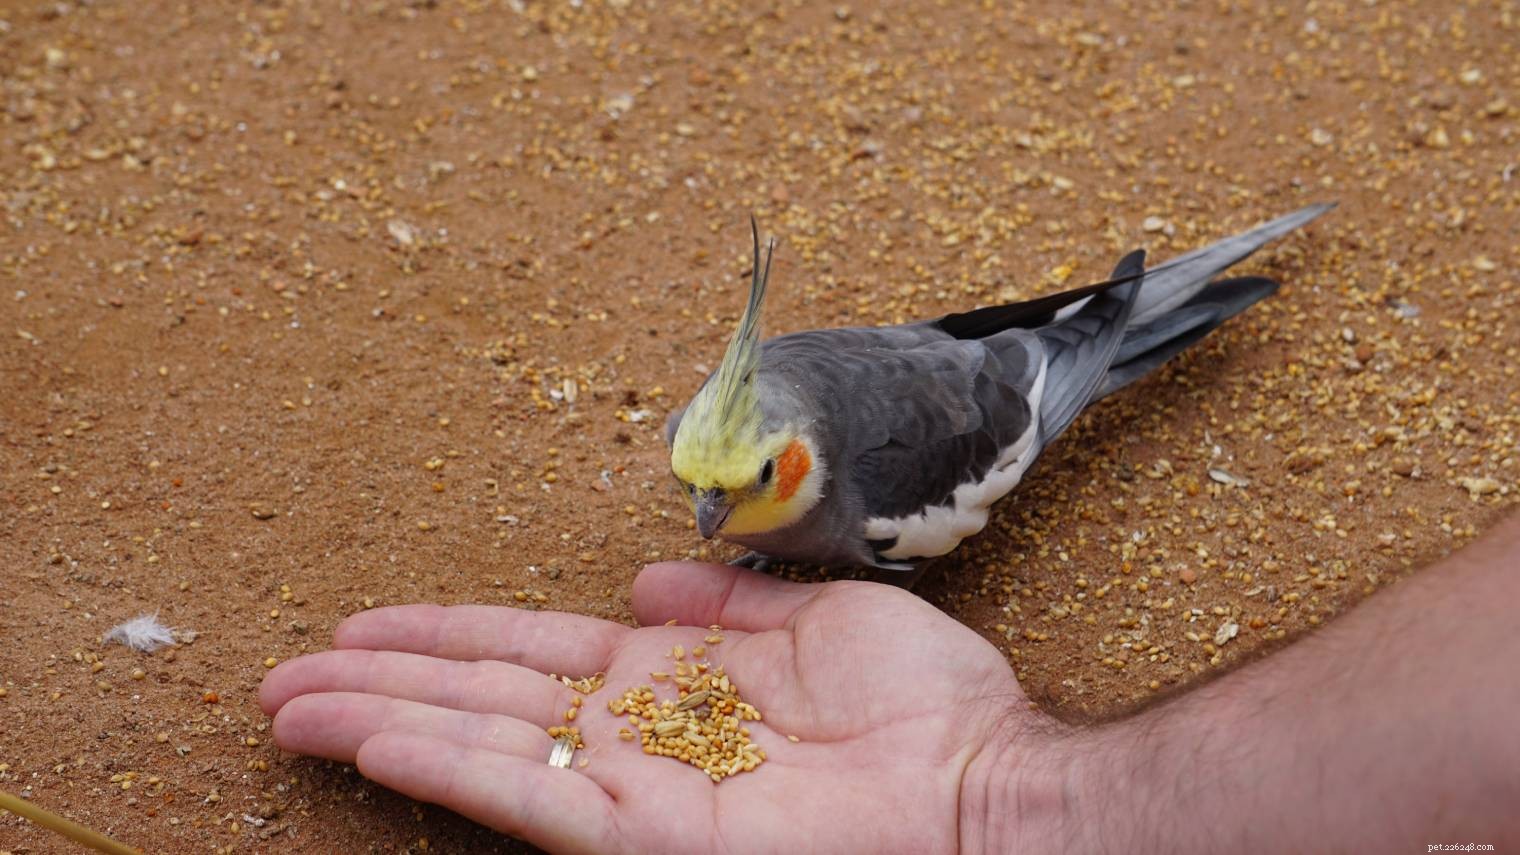 Come scegliere il giusto cibo per uccelli da compagnia:nutrizione, etichette e altro!